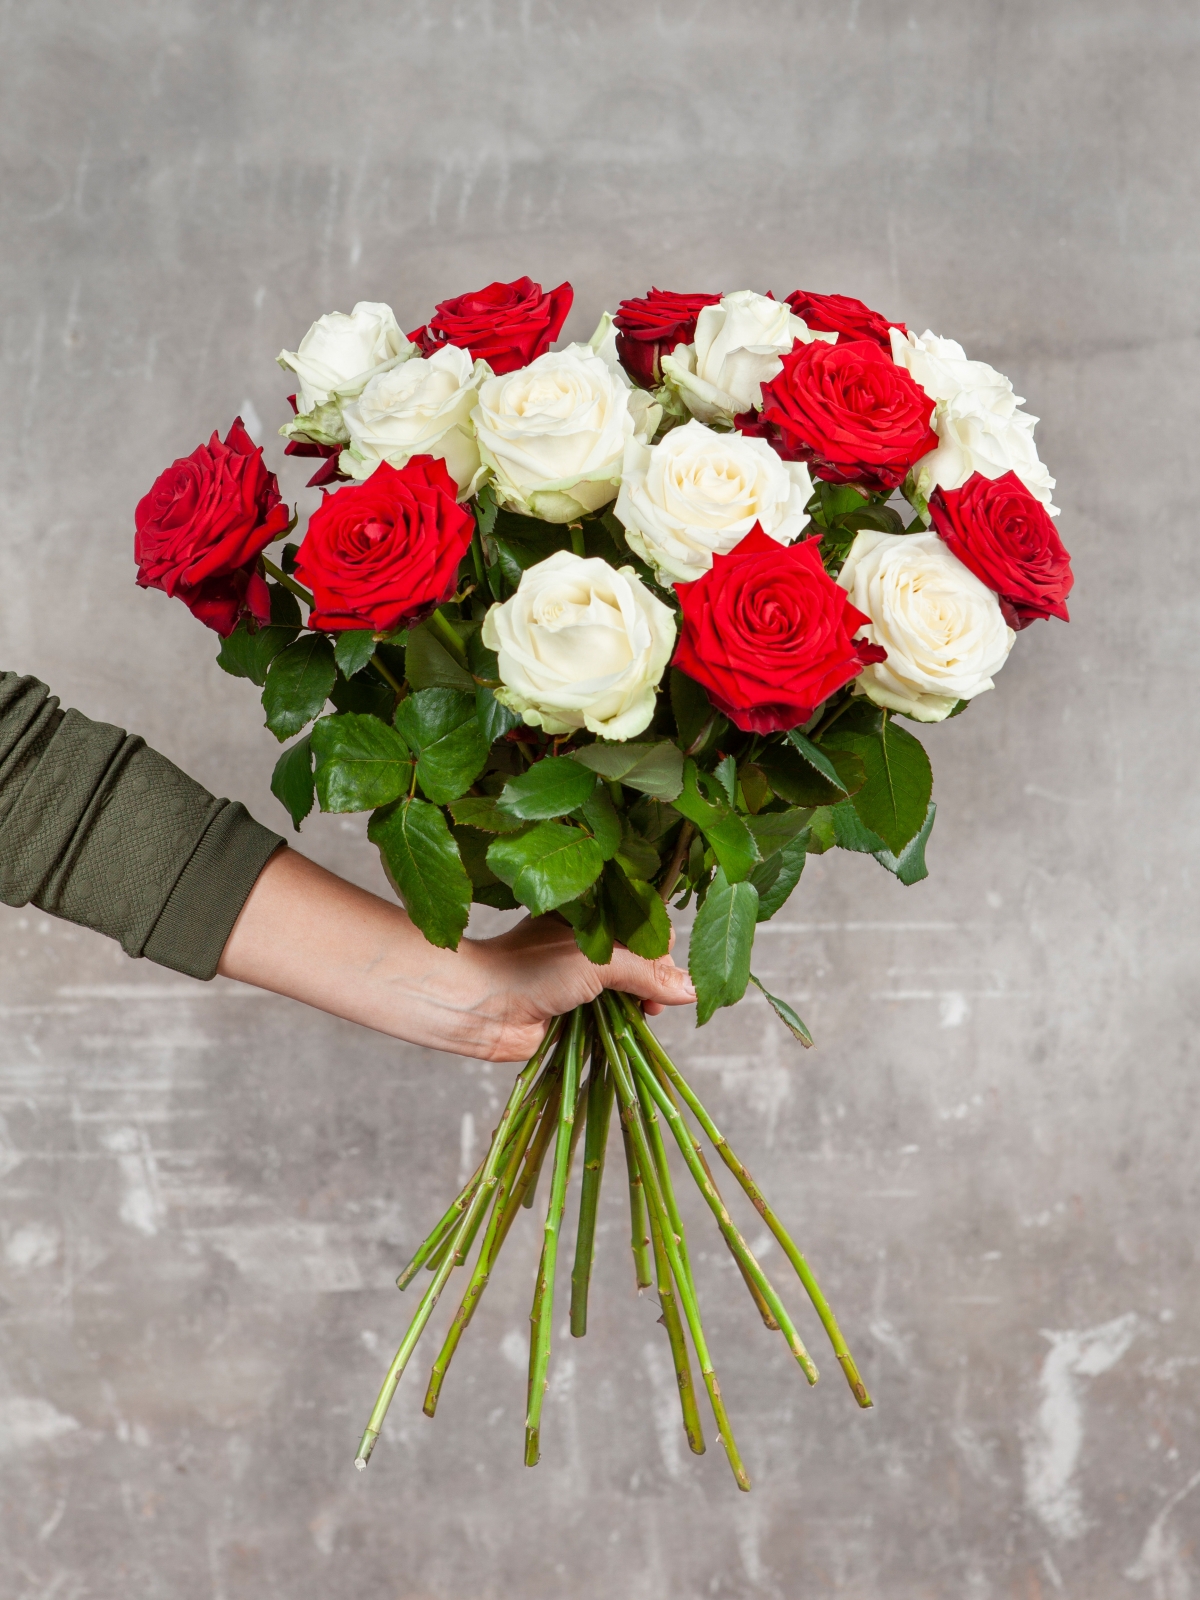 Vijftig anker doen alsof BloemenVaria Boeket rode rozen Online boeket bloemen bloemstuk bestellen en  landelijk bezorgen